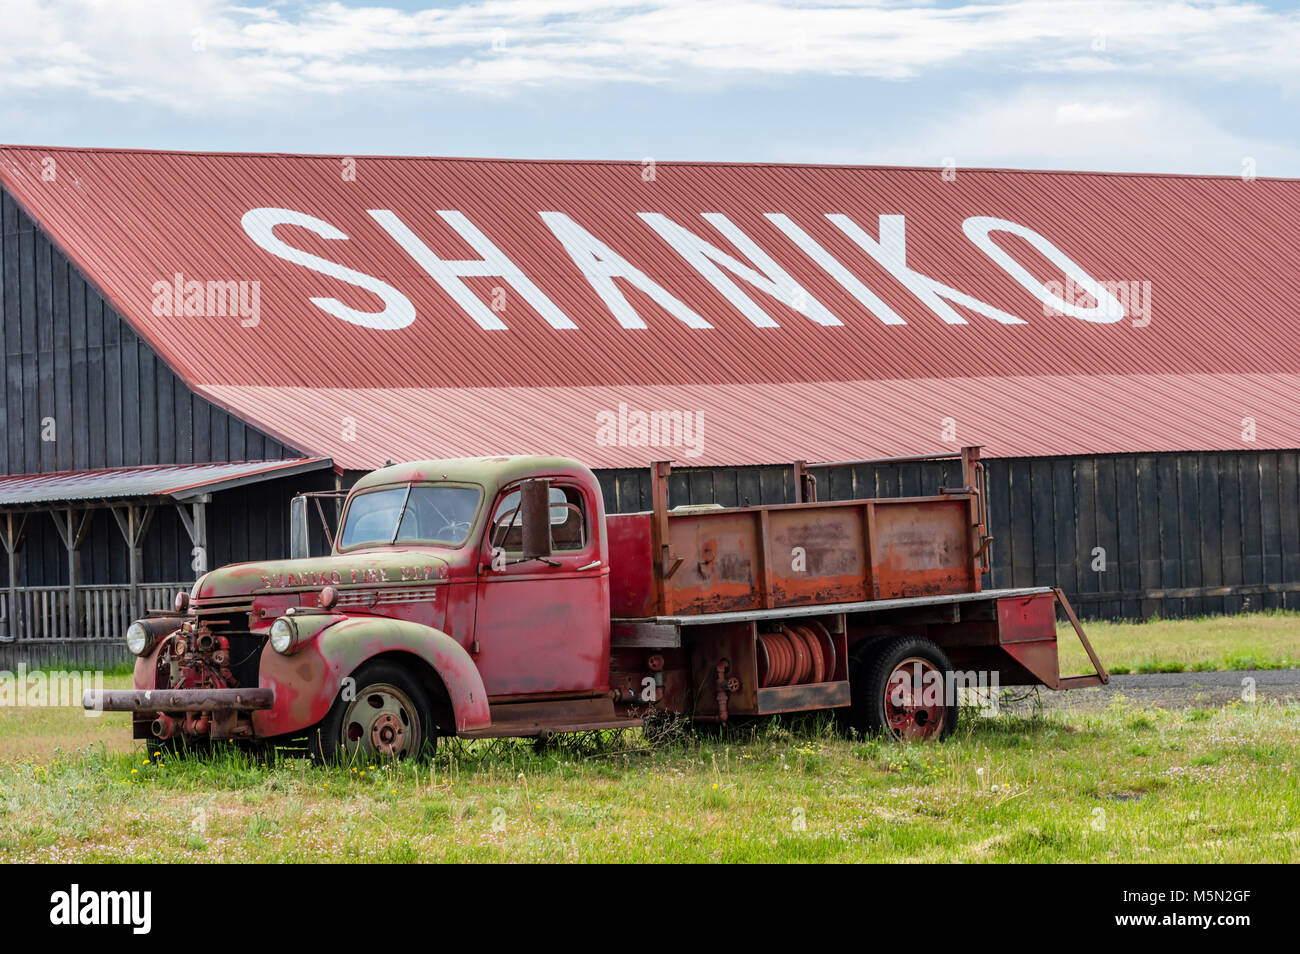 Das Löschfahrzeug aus Oregon Ghost Town, Shaniko. Befindet sich in der hohen Wüste von östlichen Oregon Shaniko ist heute fast ausgestorben. Stockfoto